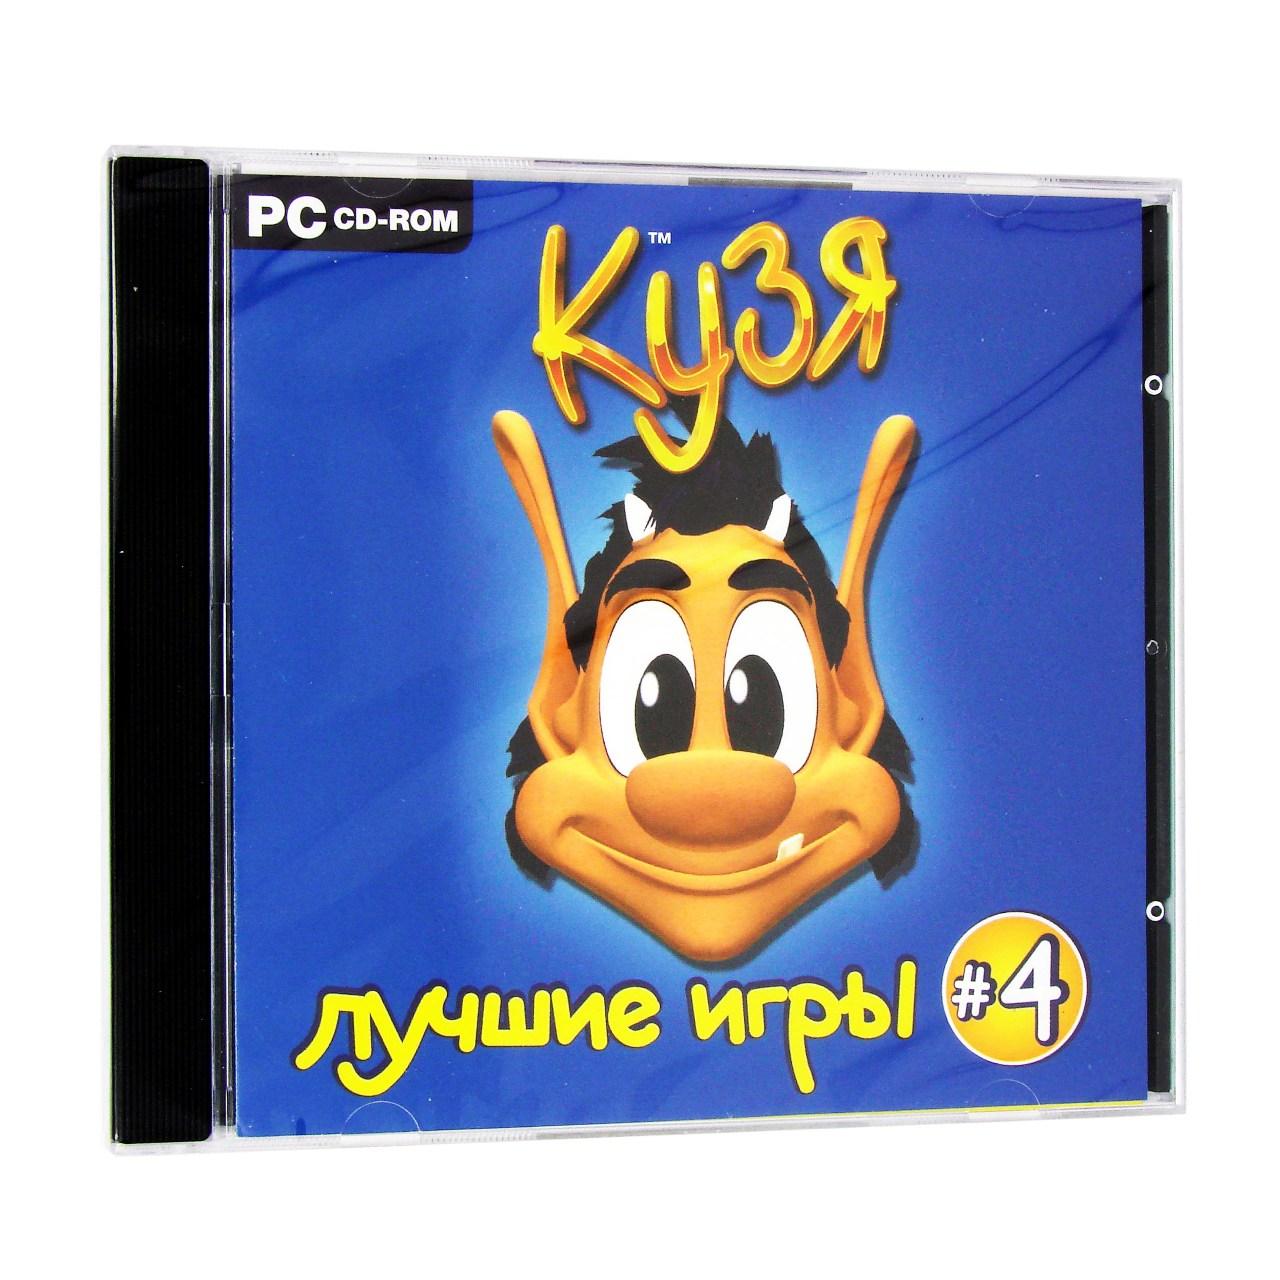 Компьютерный компакт-диск Кузя 4 (ПК), фирма "Новый диск", 1CD